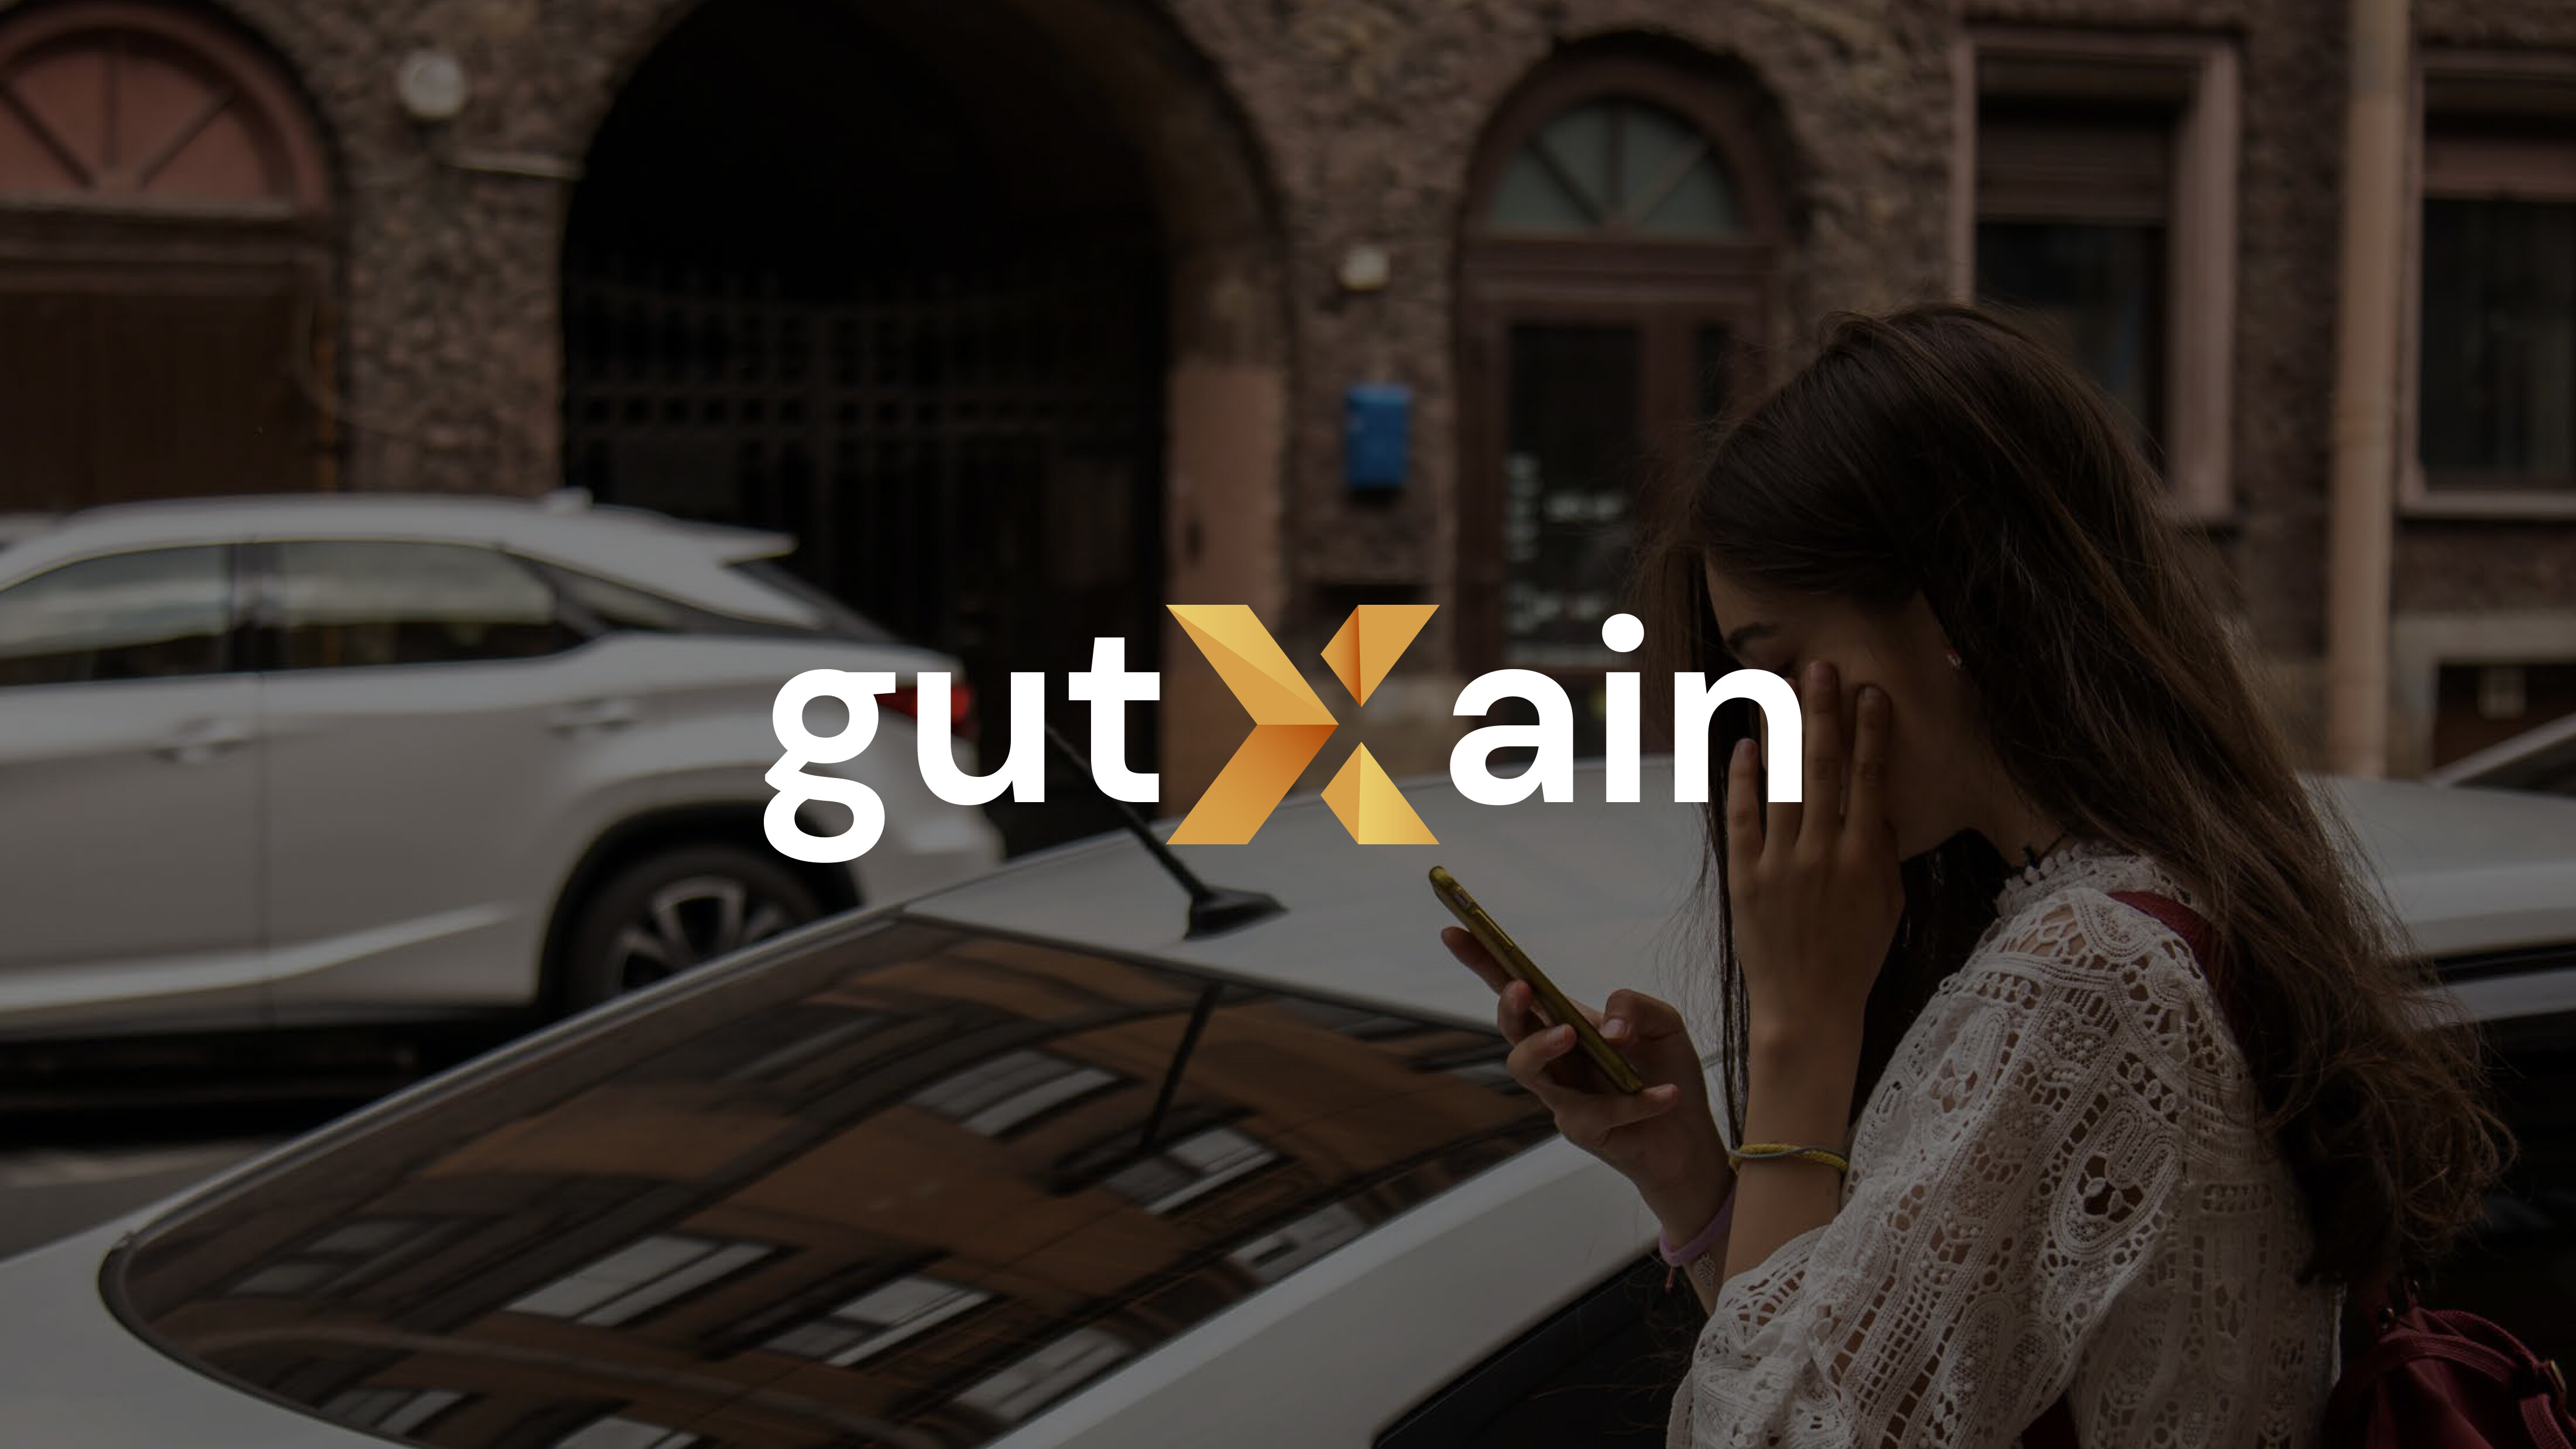 Hablamos con Lorena García, Co-Founder & CMO de GutXain, sobre la app y sus  consejos para una buena adquisición. | App Marketing News